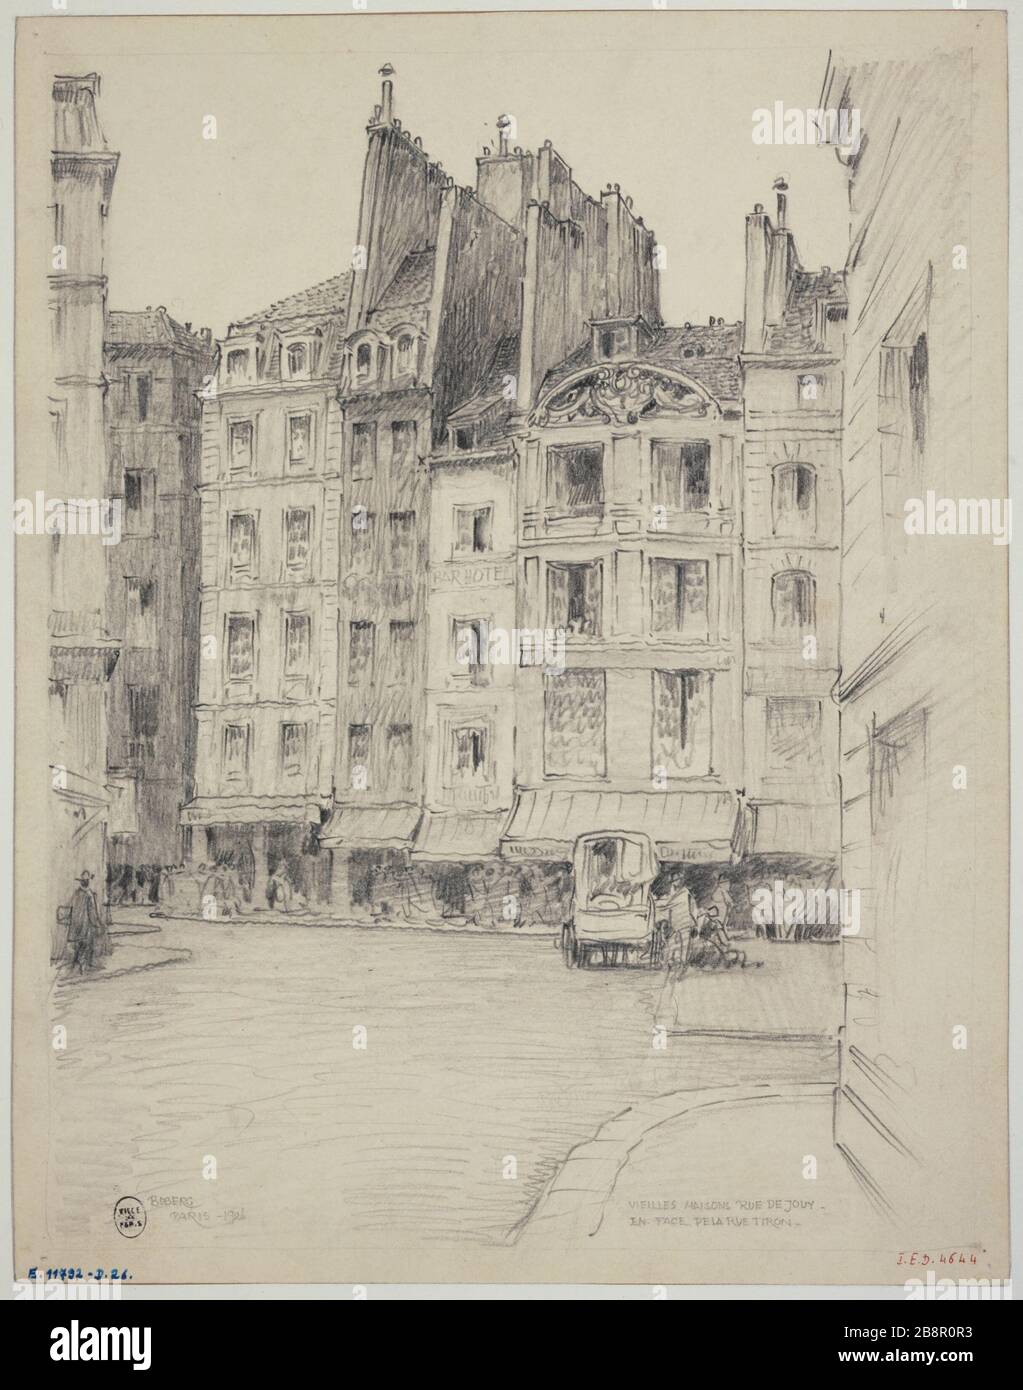 Rue de Jouy across the street Tiro 1926 Gustave Ferdinand Boberg (1860-1946), architecte suédois. Rue de Jouy en face de la rue Tiron. Crayon. Paris (IVème arr.), 1926. Paris, musée Carnavalet. Stock Photo